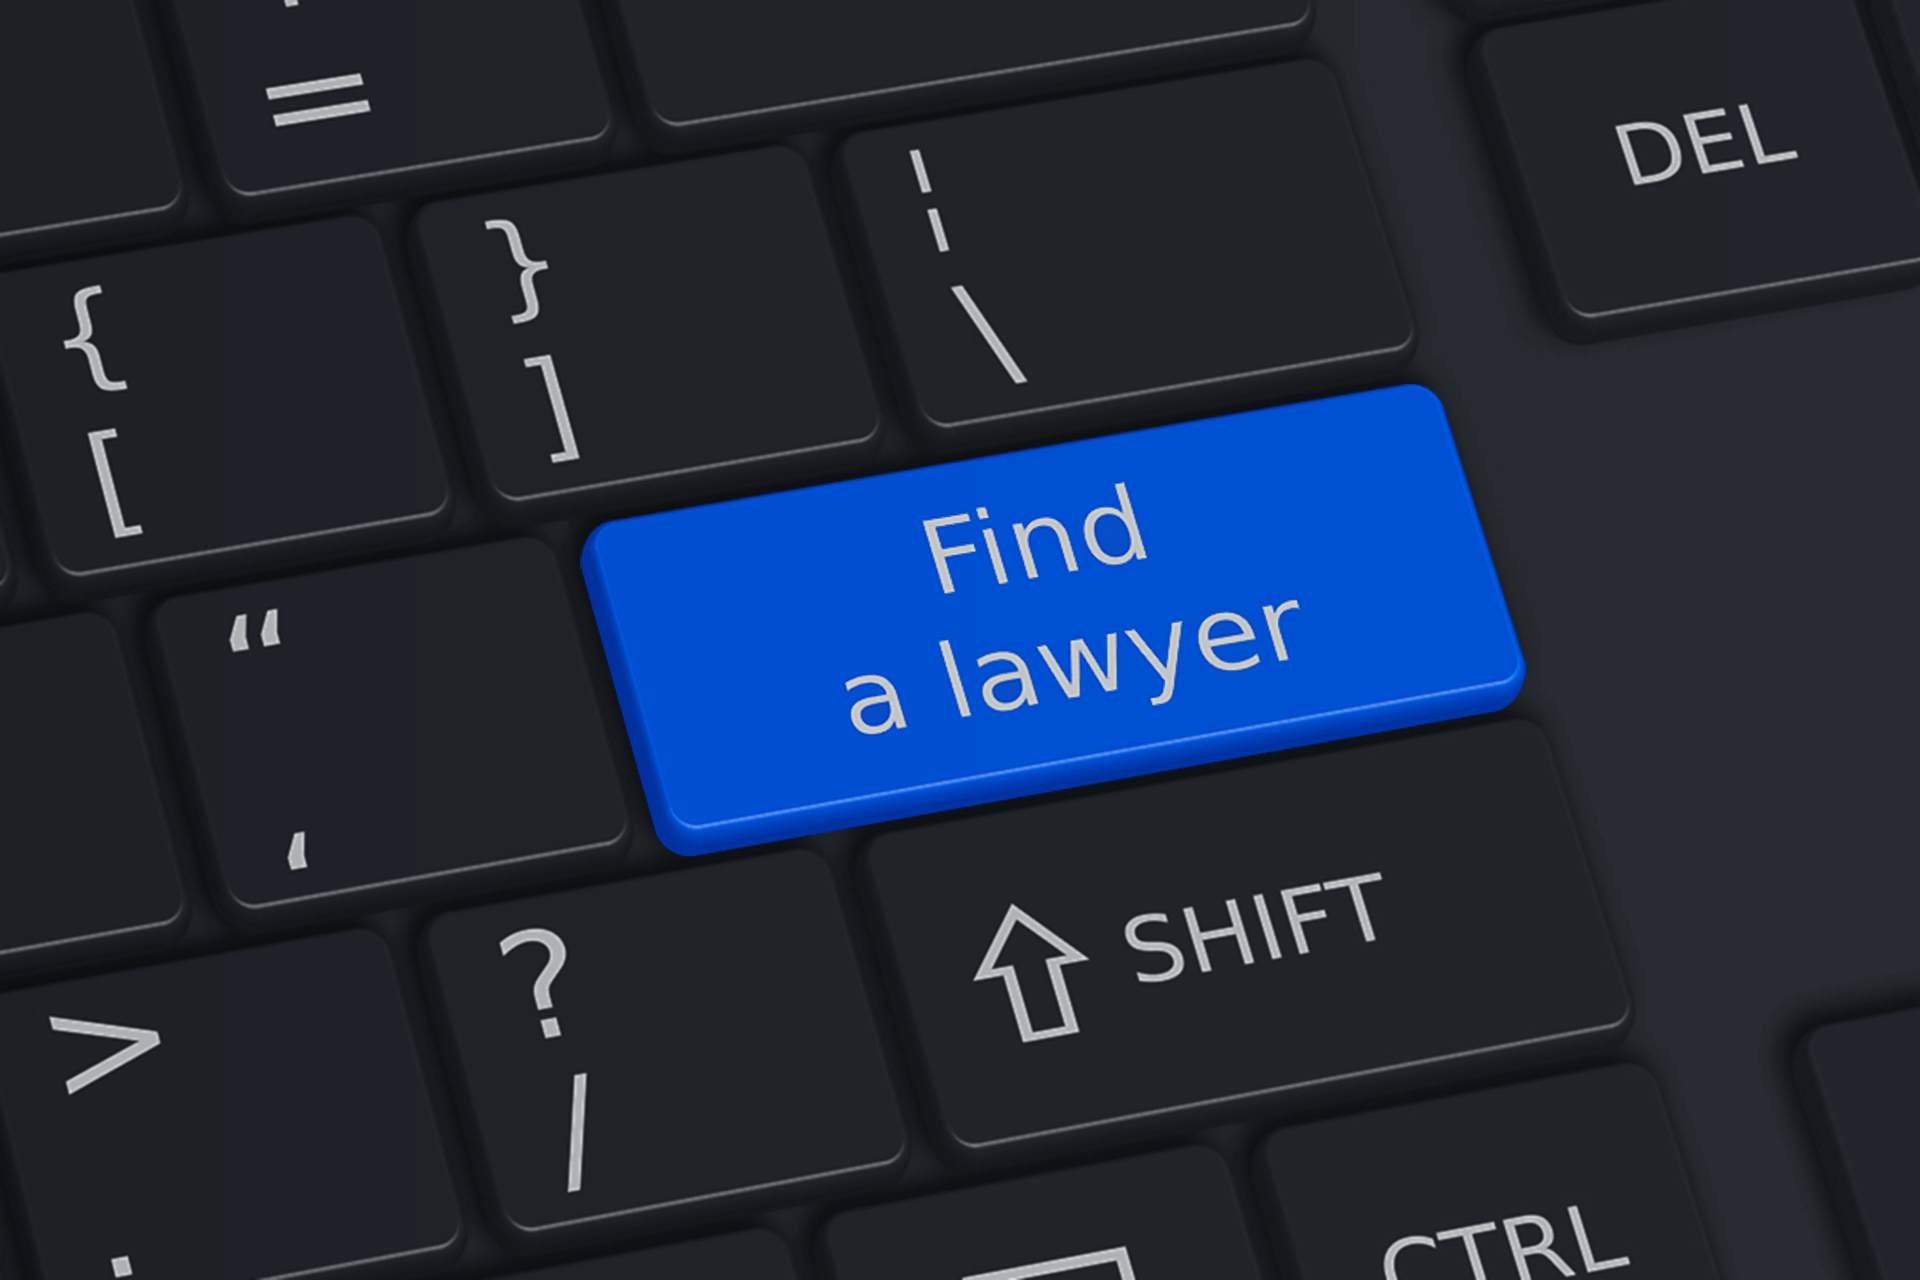 Taste „Find a lawyer“, Symbol für das Suchportal Find A Lawyer